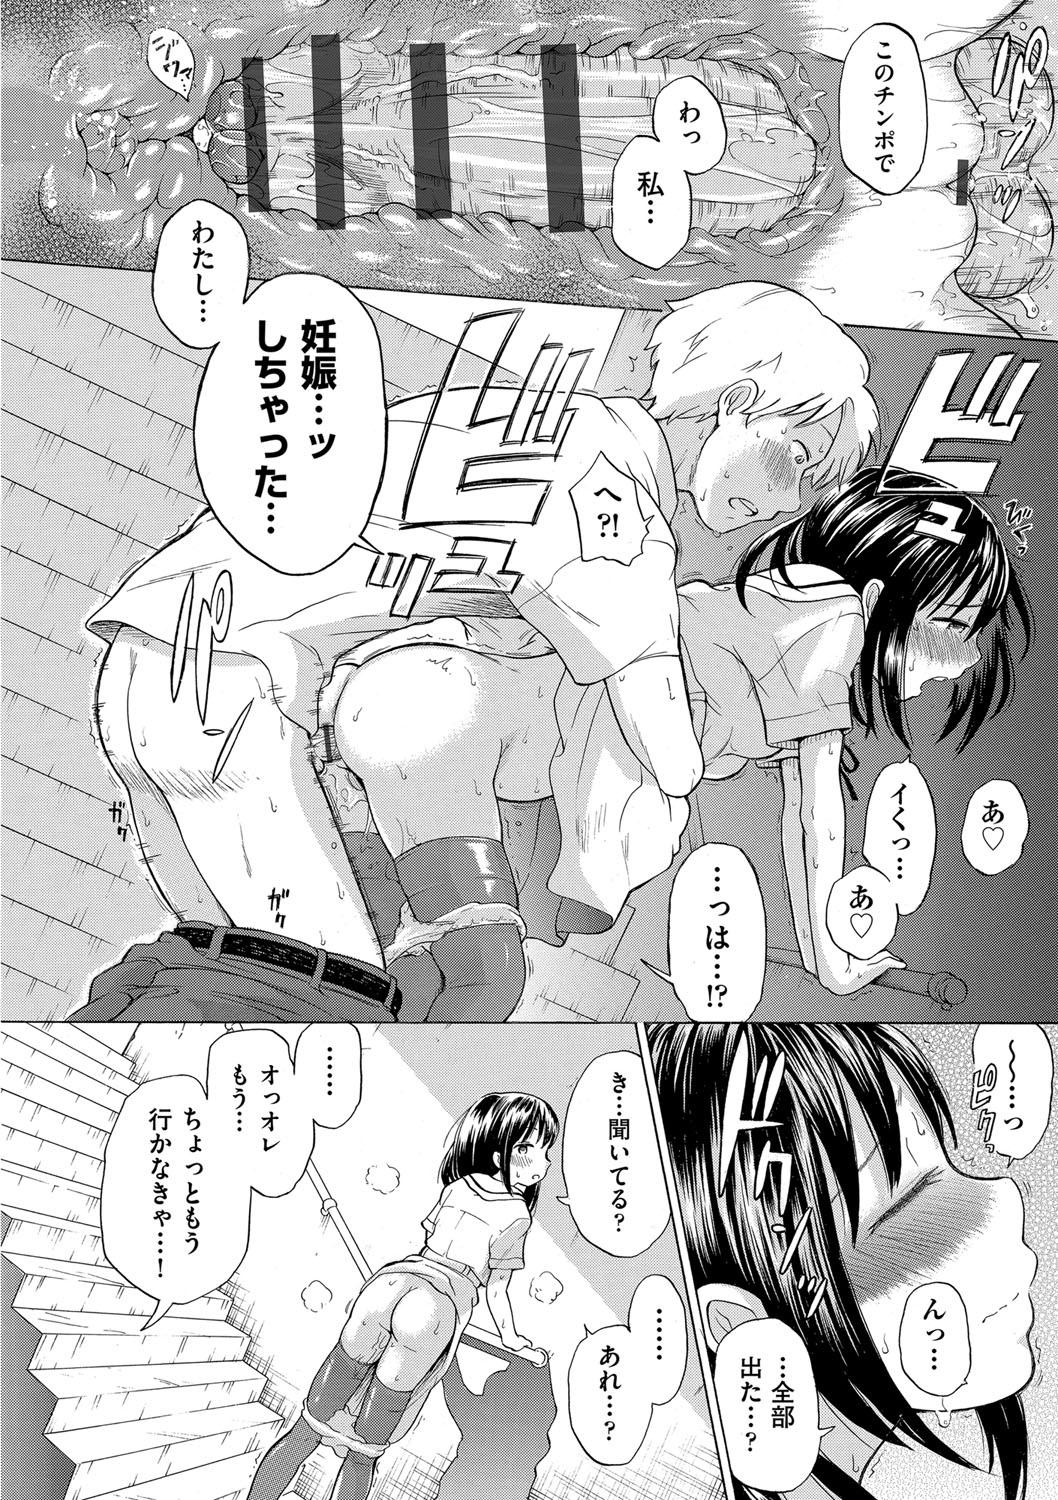 Old Shojo no Karada no kagehinata Amature Porn - Page 7